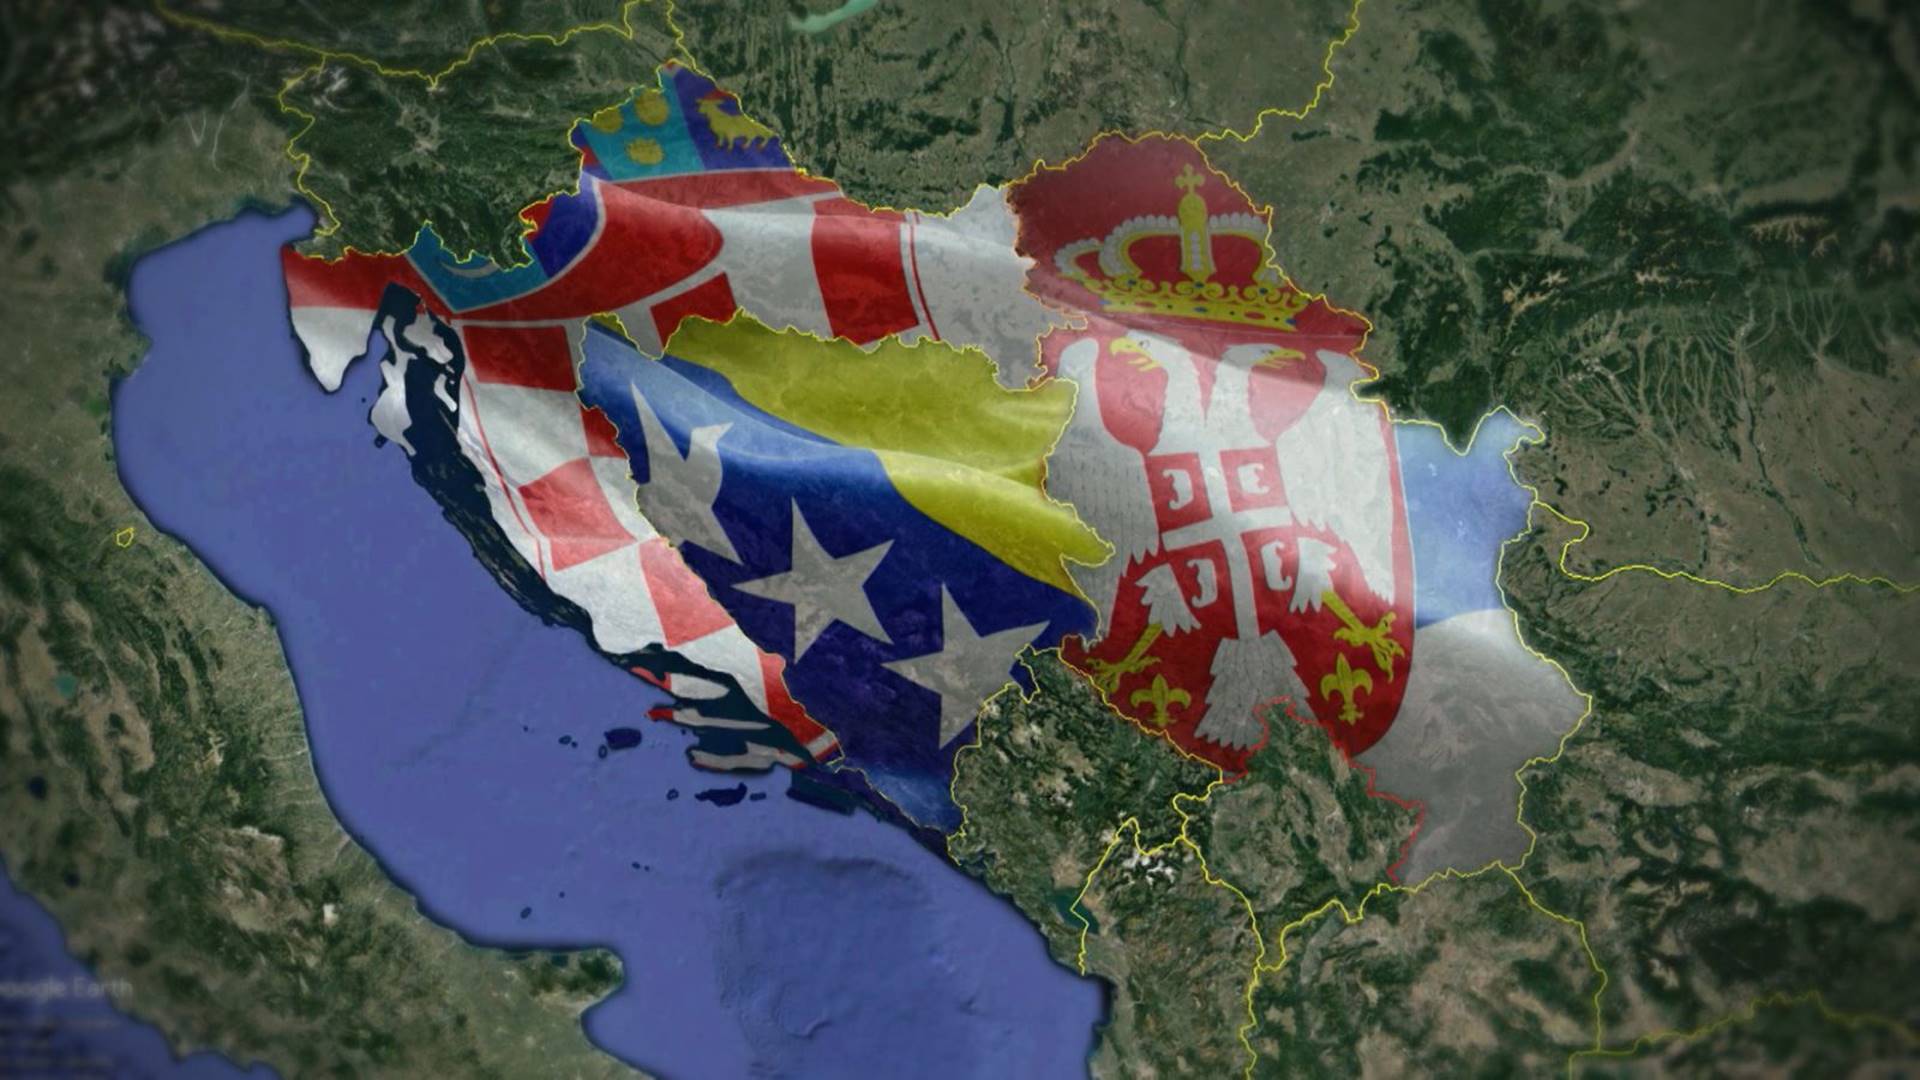 Metaj: U Srbiji i Hrvatskoj postoje snažni glasovi protiv fašizma kojim se ugrožava BiH